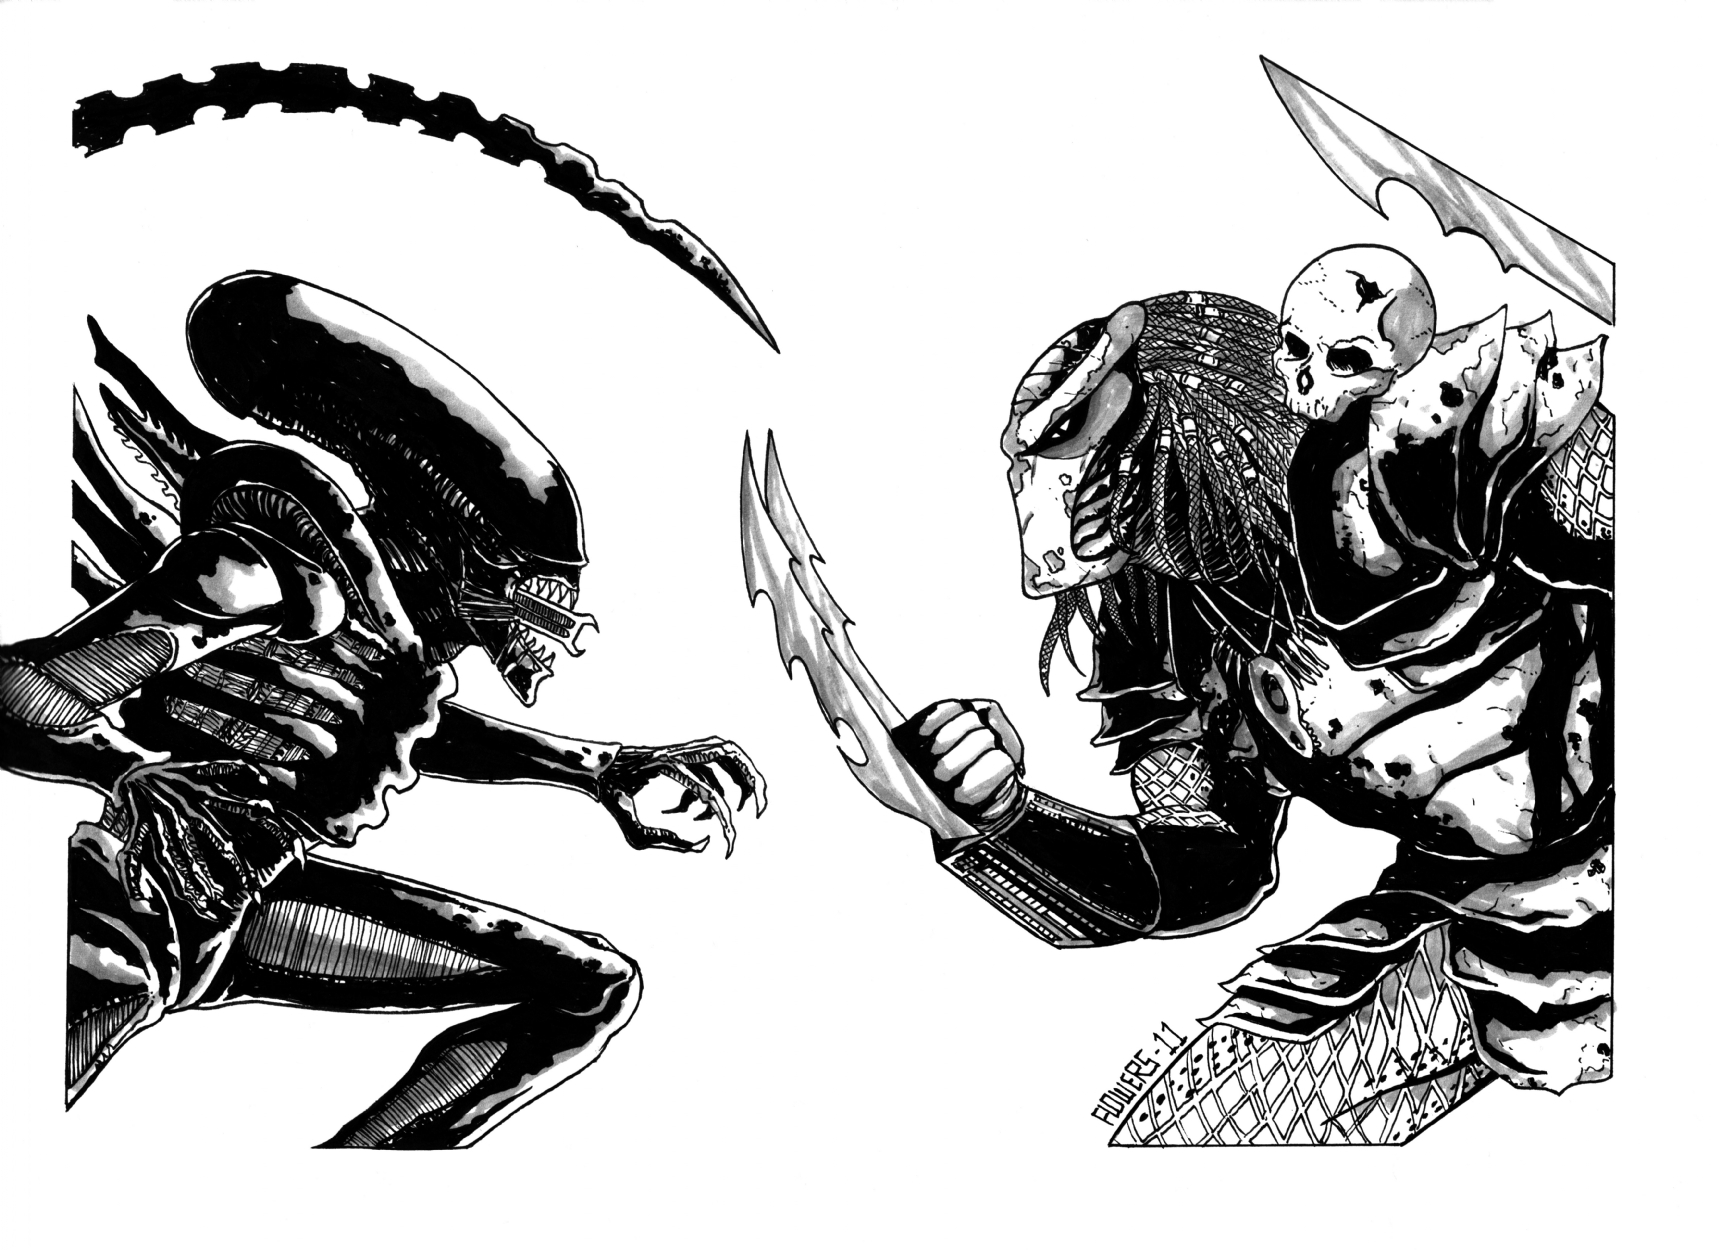 Alien vs. Predator commission by Jason Flowers, in Dave Kopecki's